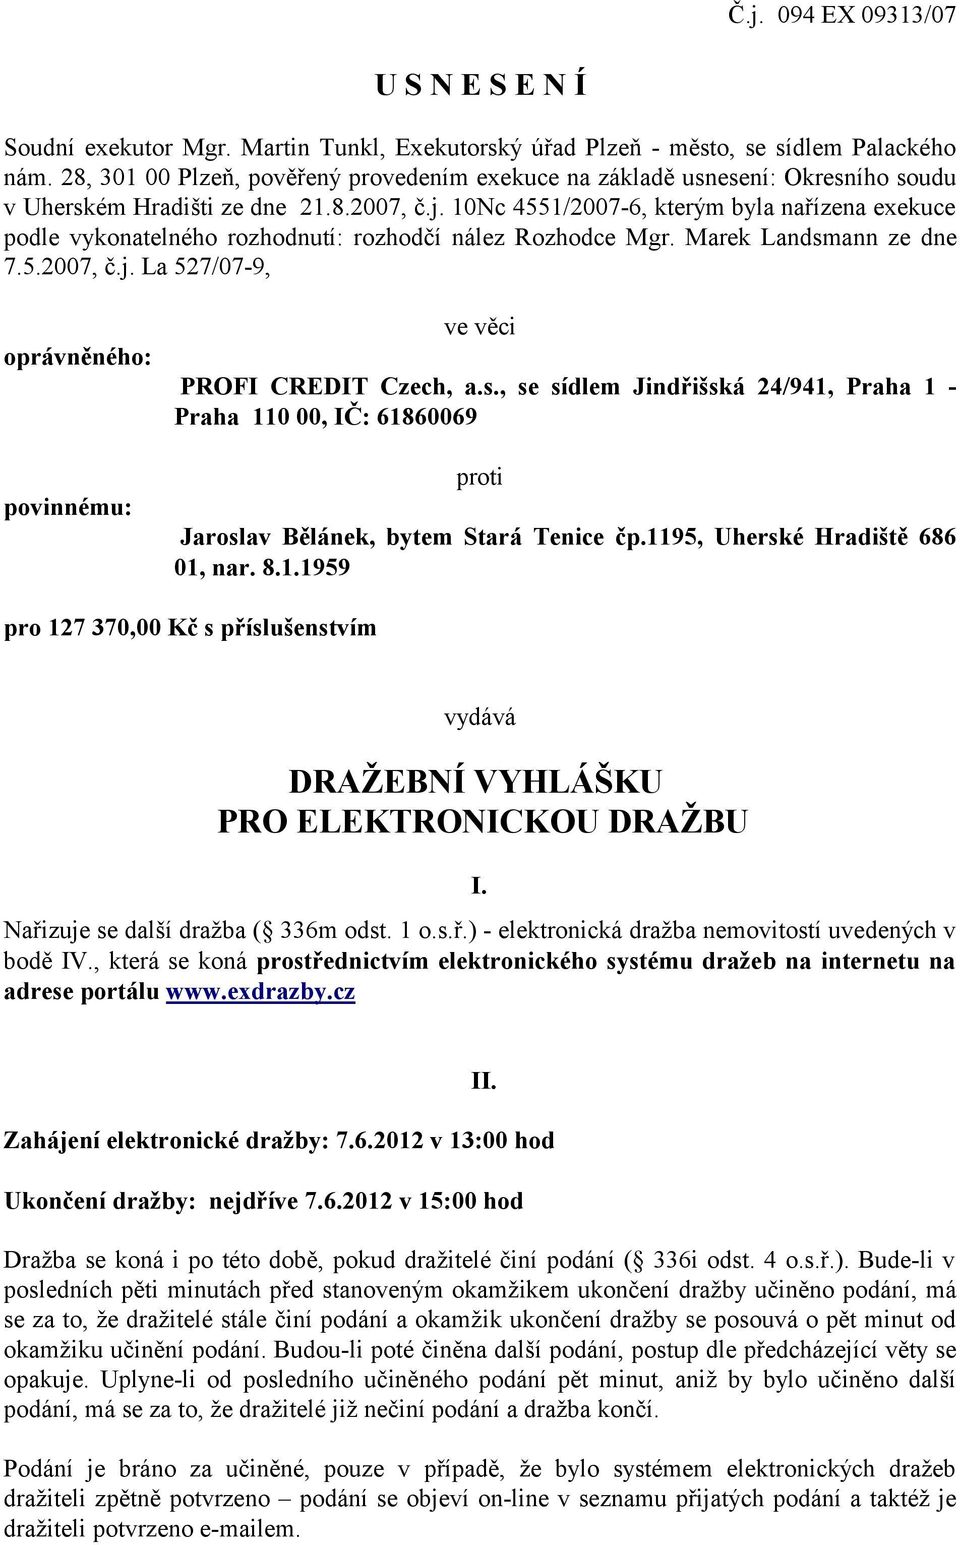 10Nc 4551/2007-6, kterým byla nařízena exekuce podle vykonatelného rozhodnutí: rozhodčí nález Rozhodce Mgr. Marek Landsmann ze dne 7.5.2007, č.j.